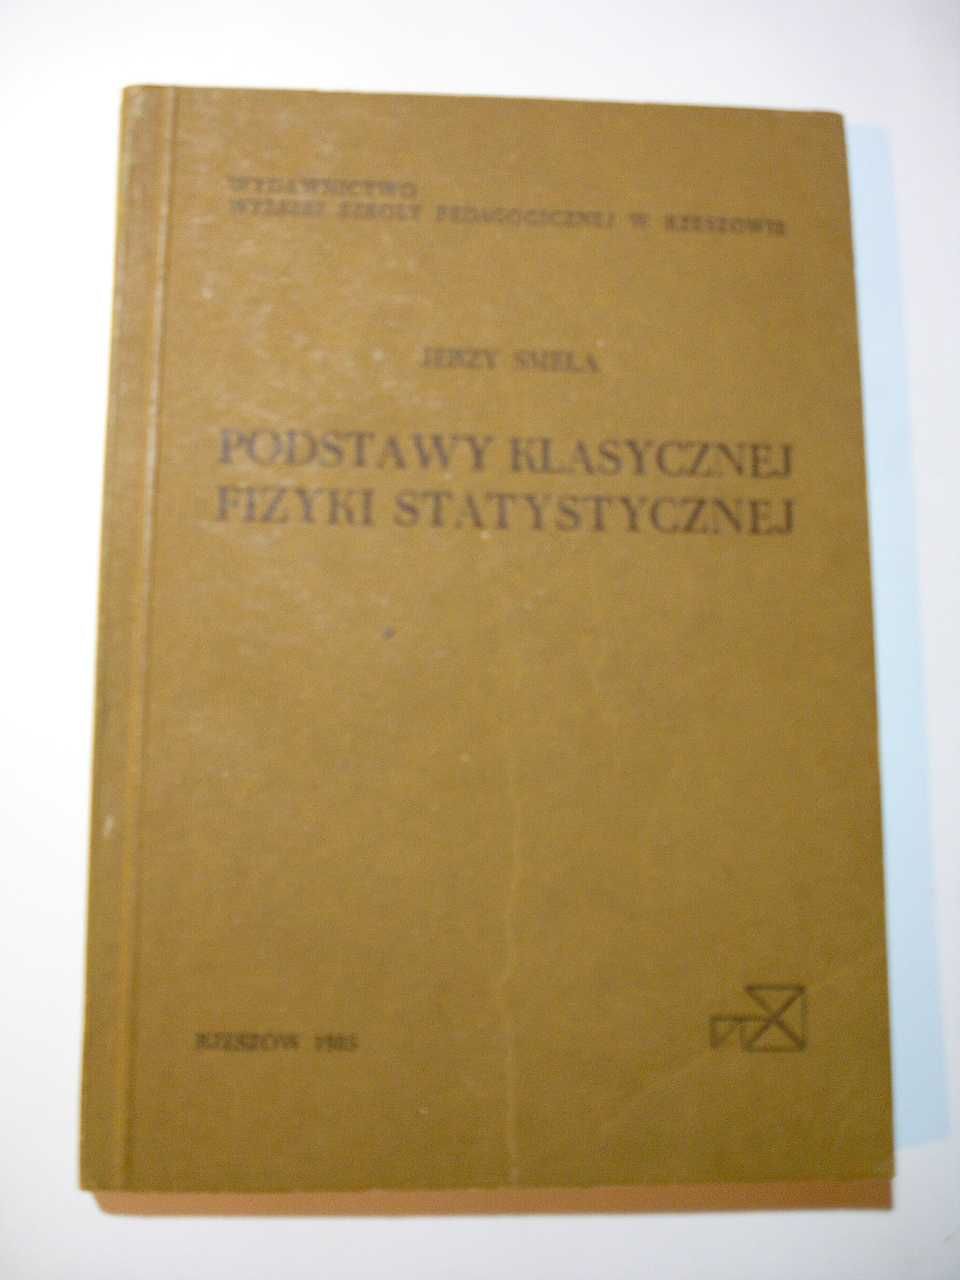 Podstawy klasycznej fizyki statystycznej. Jerzy Smela